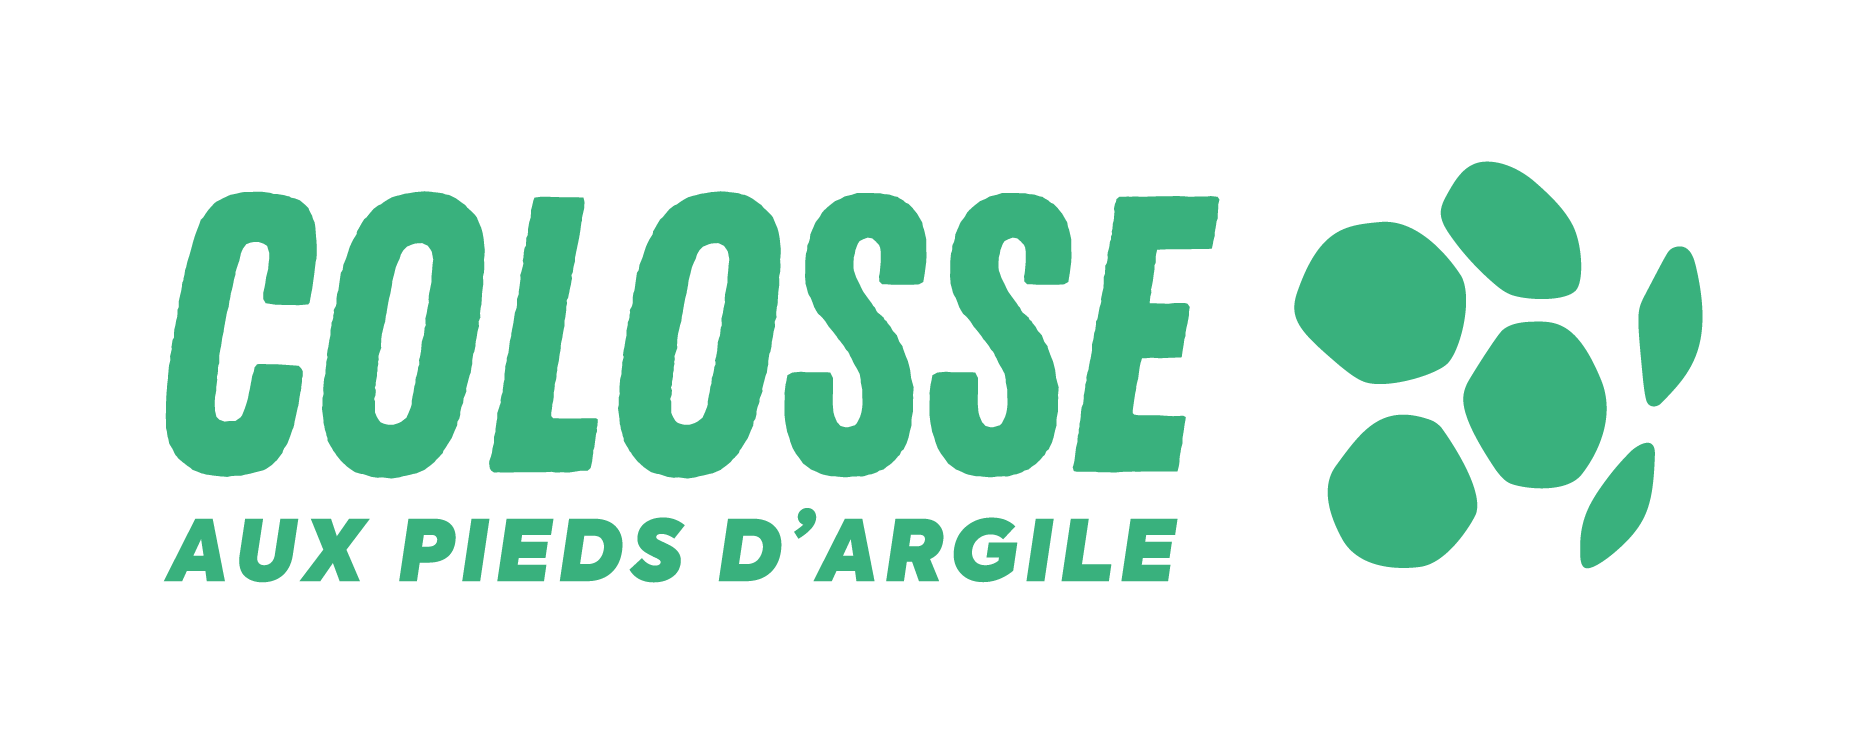 colosse-aux-pieds-d-argile-logo-633450fcc0a91096803068.png